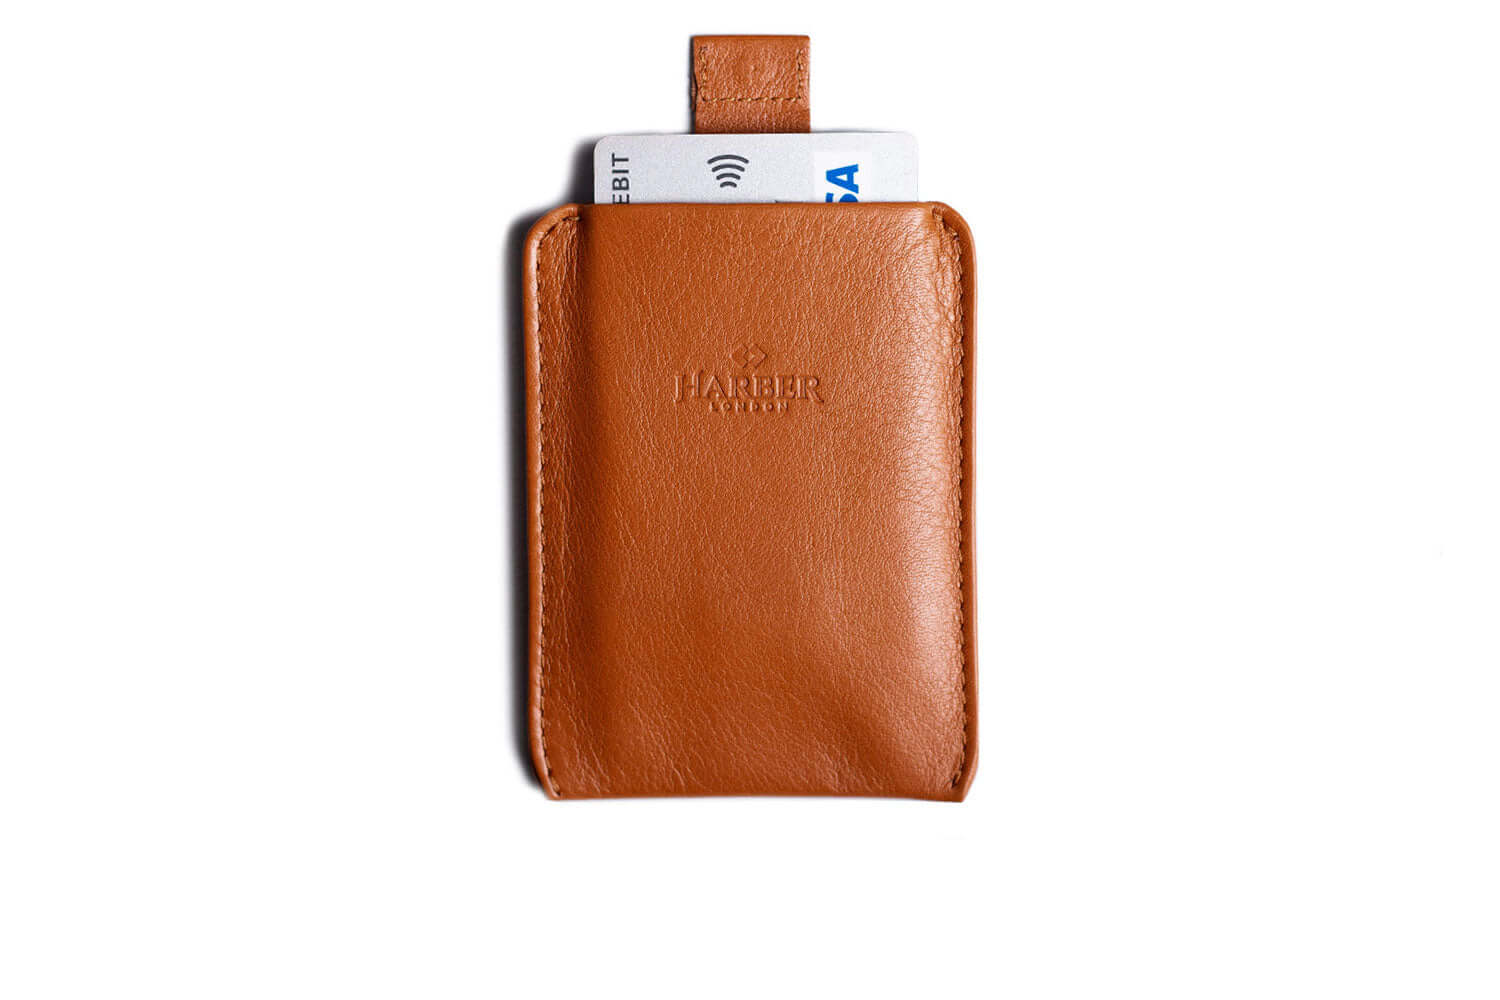 Faztroo Super Slim Wallet / Leather Card Holder for Men & Women, Brown